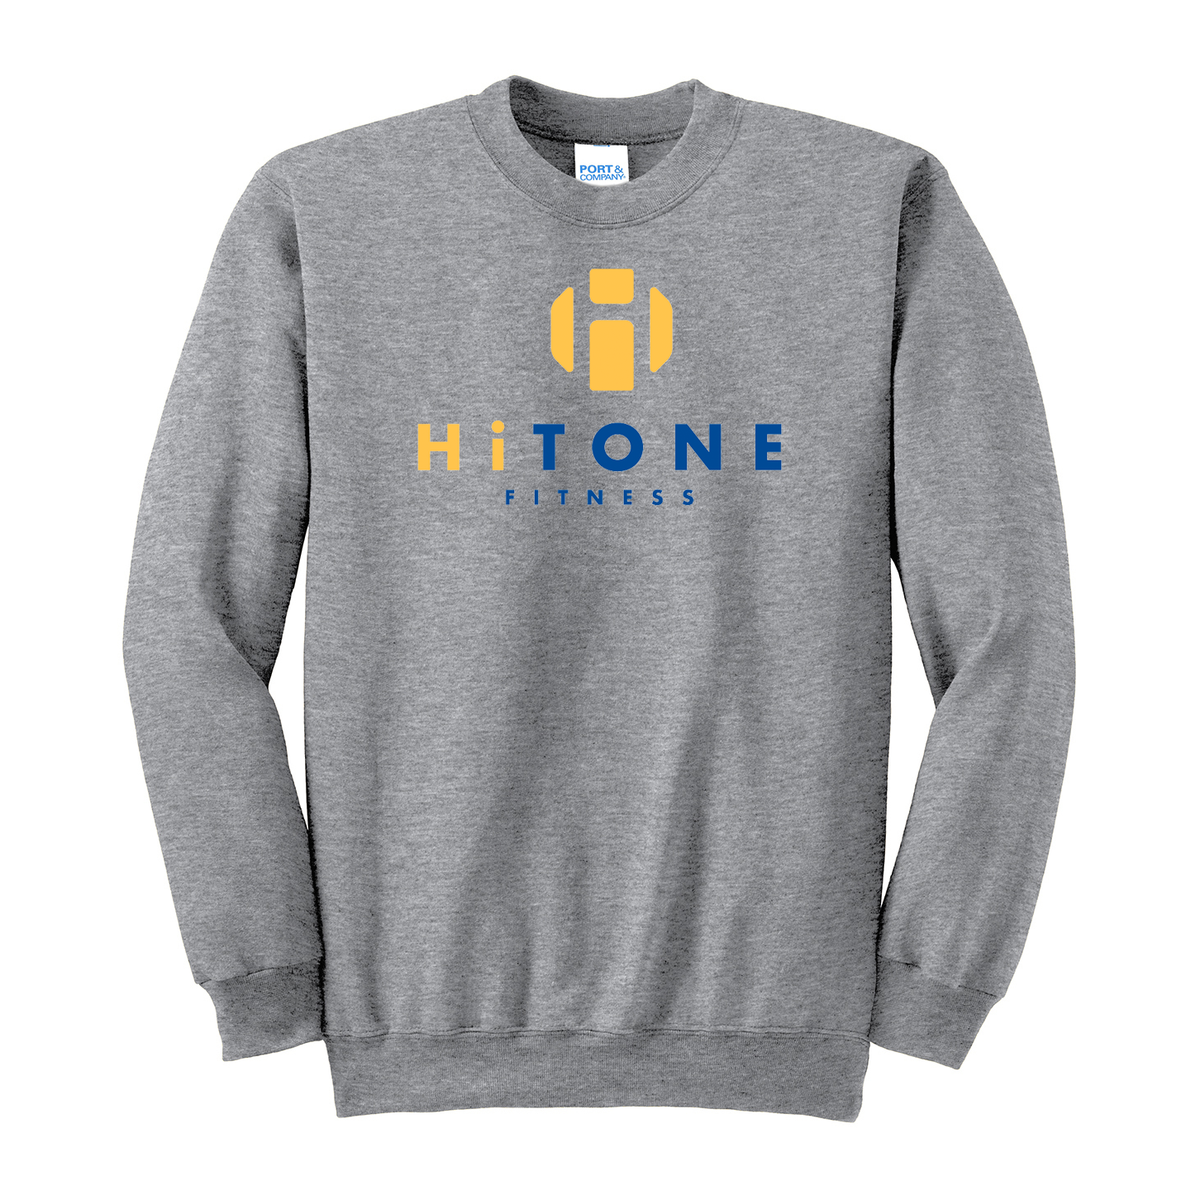 HiTONE Fitness Crew Neck Sweater